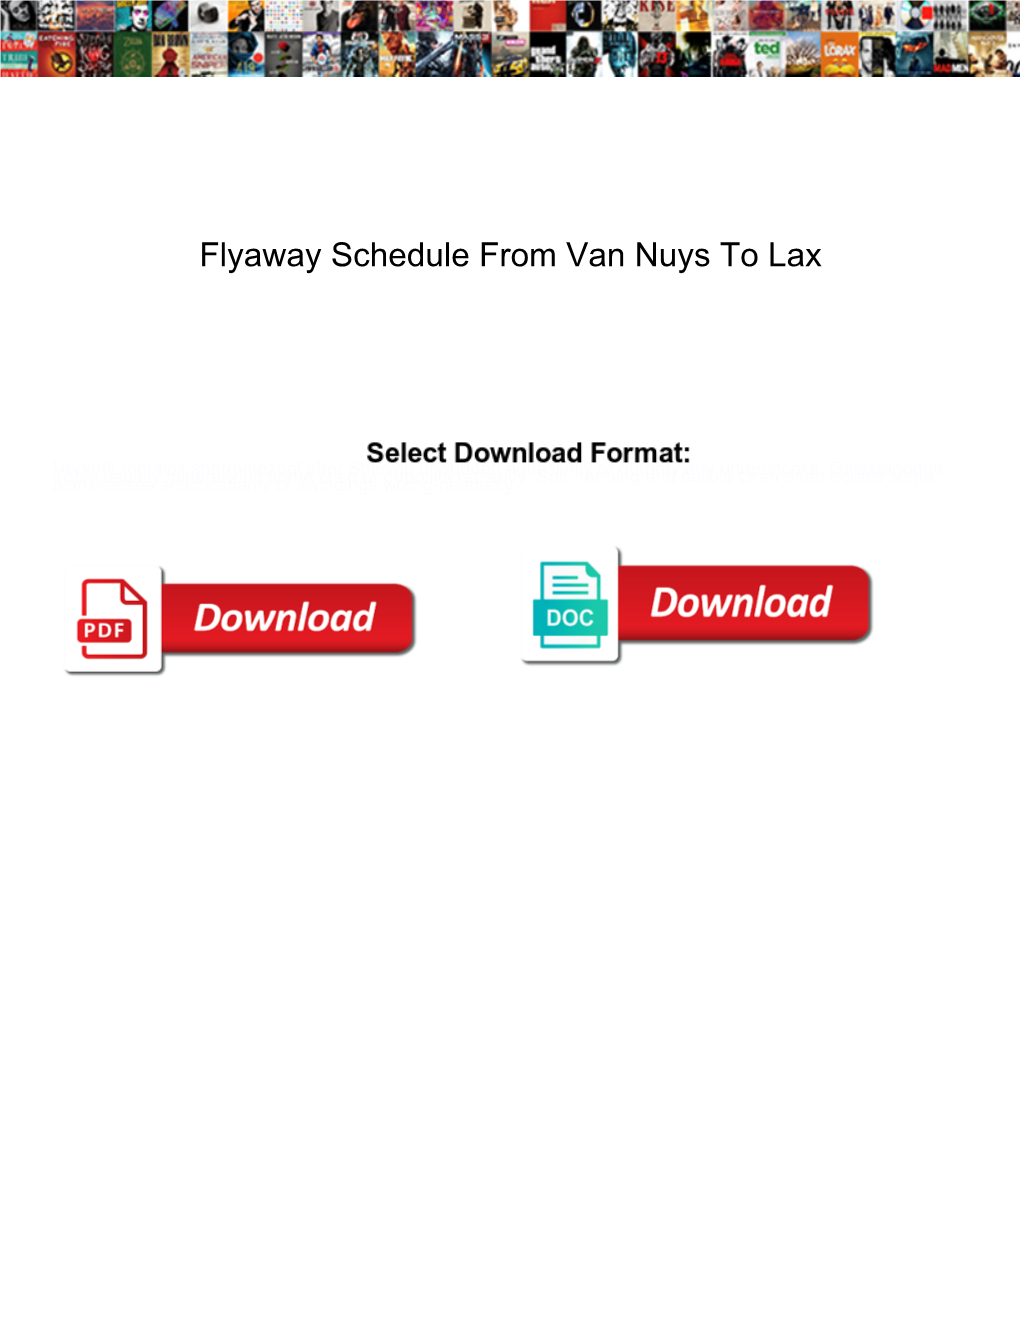 Flyaway Schedule from Van Nuys to Lax